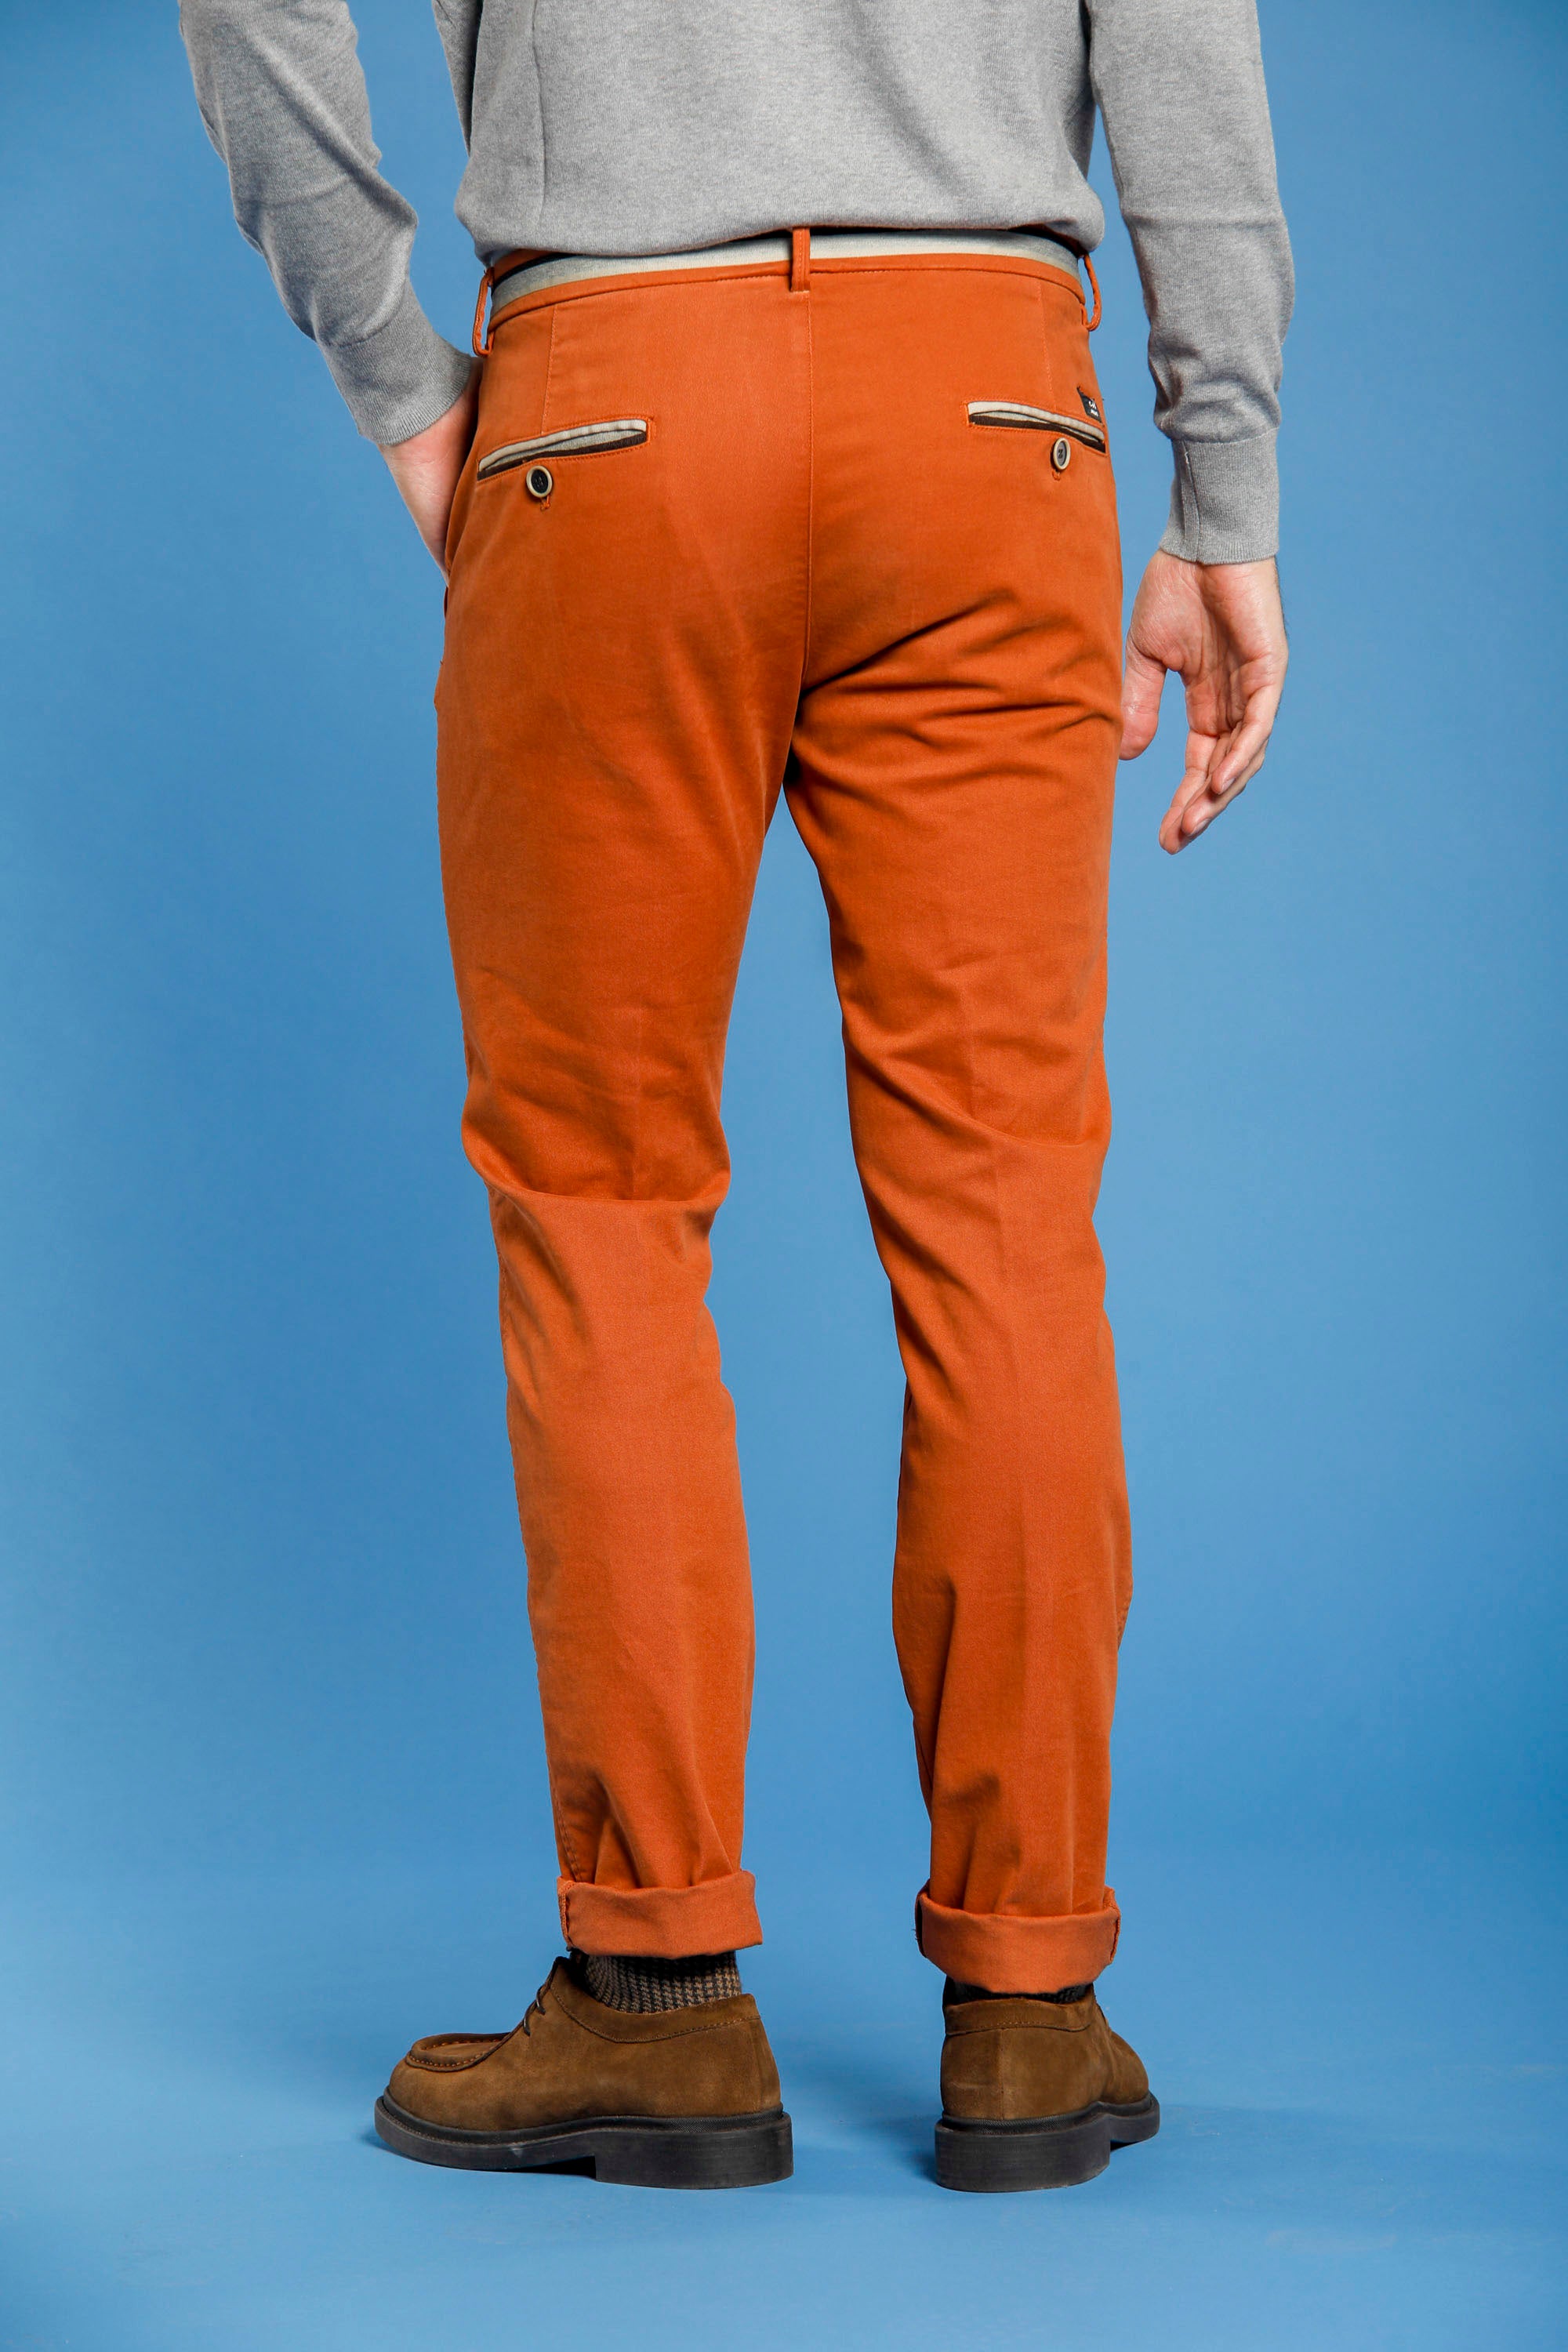 Torino Winter pantalon chino homme en gabardine et modal stretch coupe slim